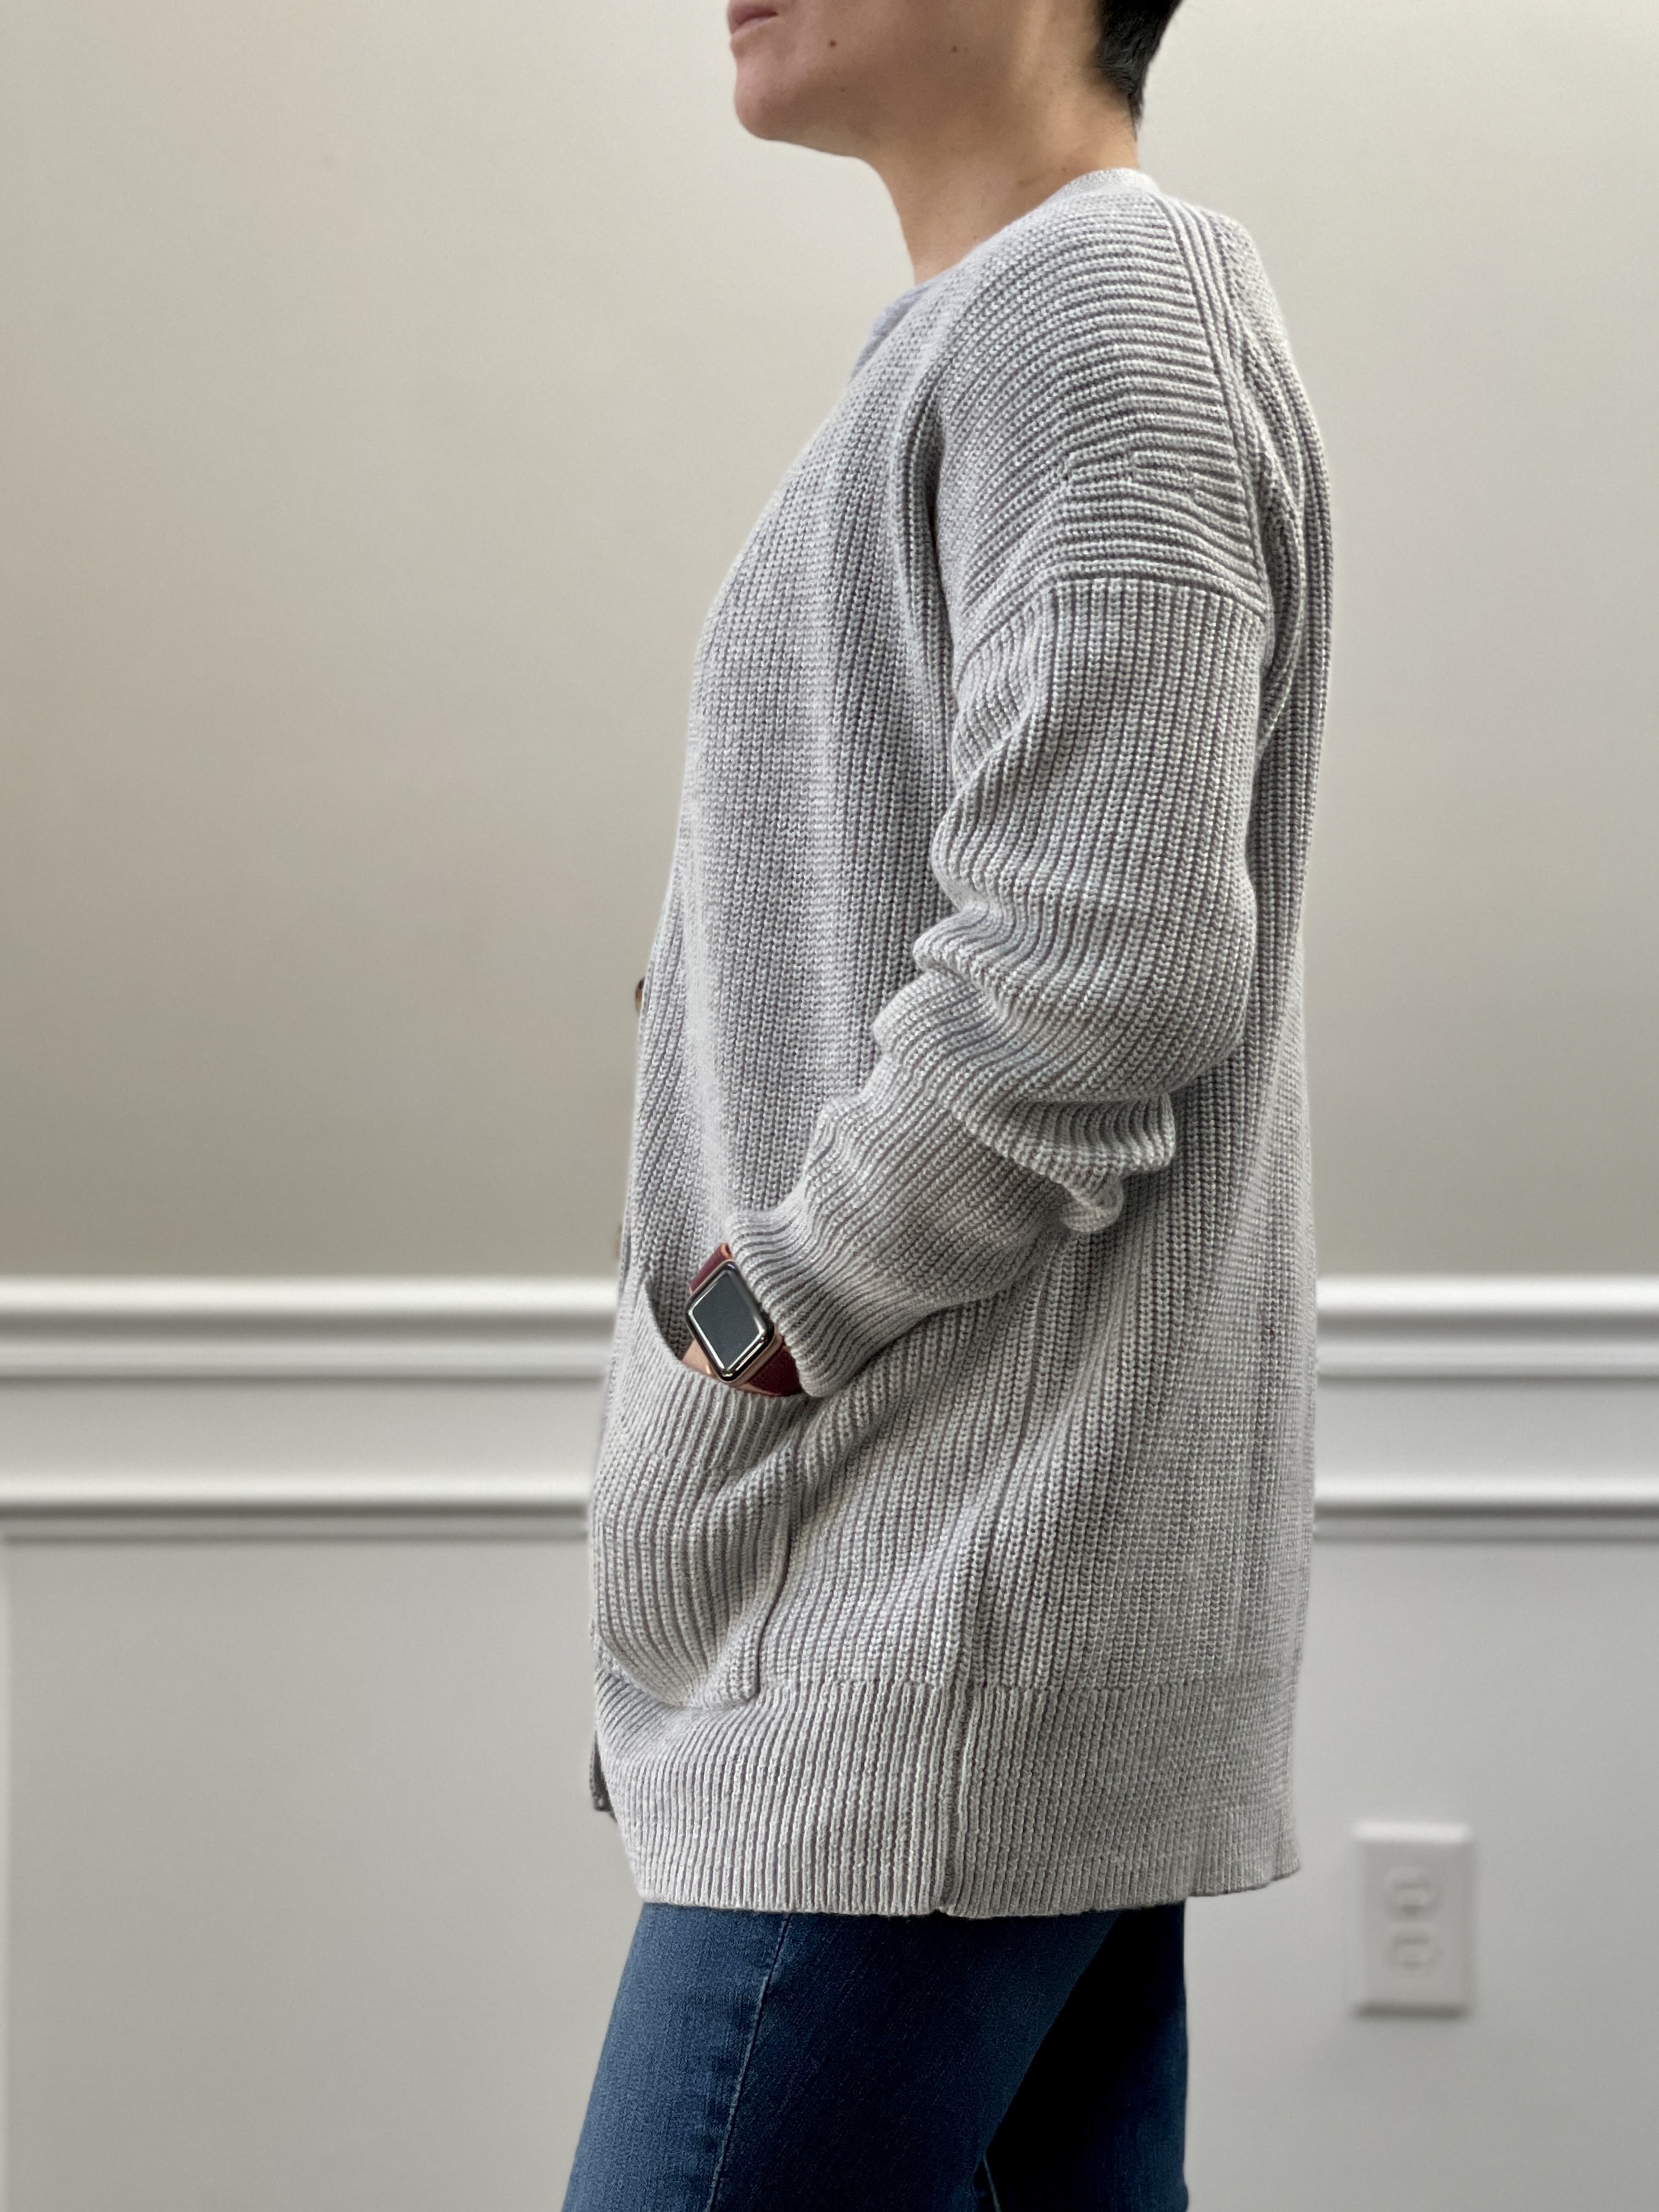 Louis Vuitton Men's Blue Camo Pique Jacquard Crewneck Sweater